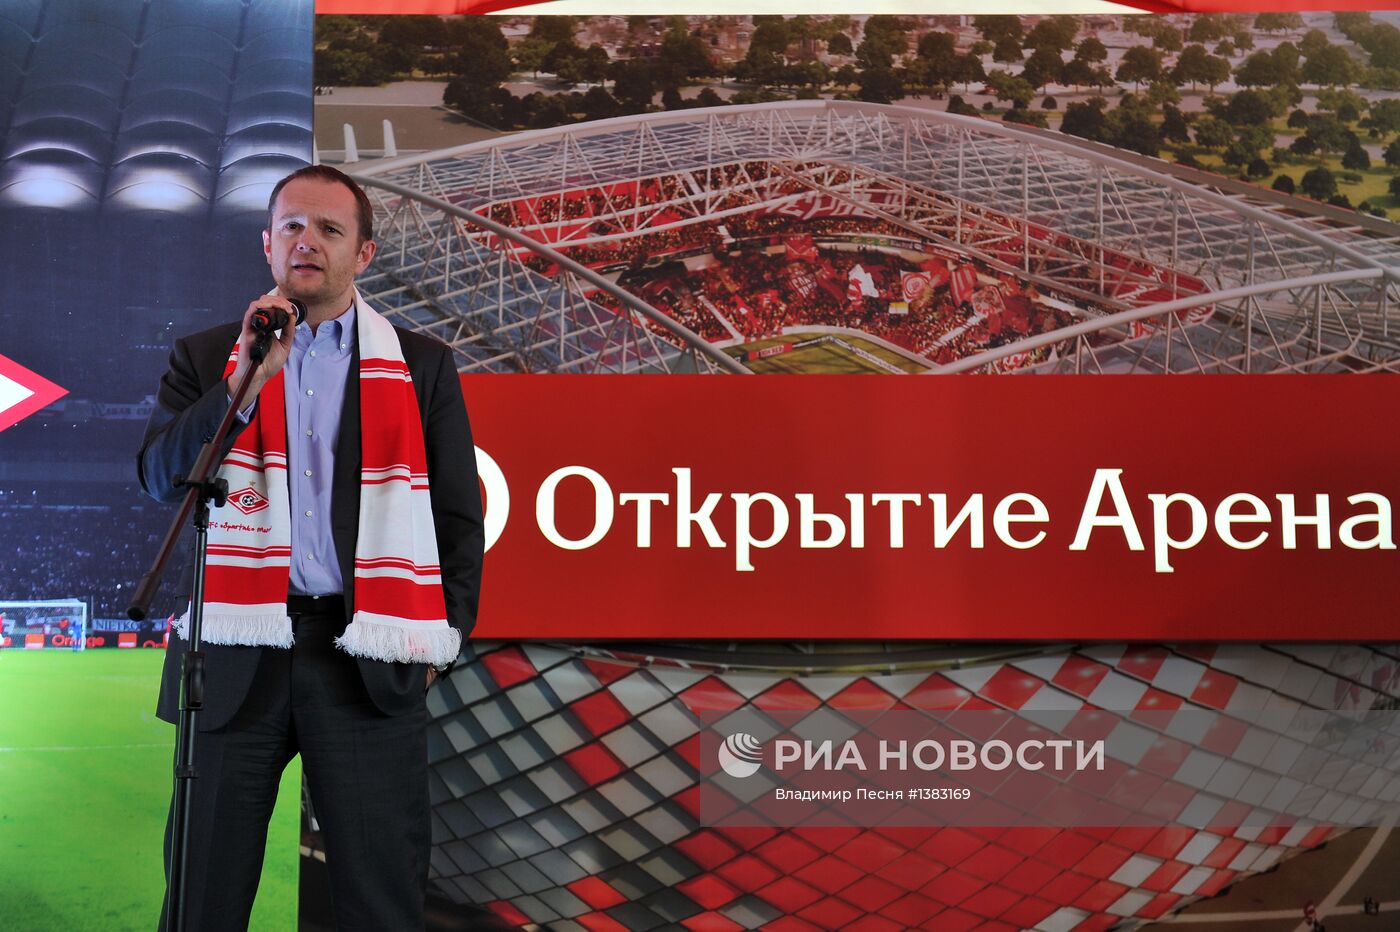 Новый стадион "Спартака" получит имя "Открытие-Арена"